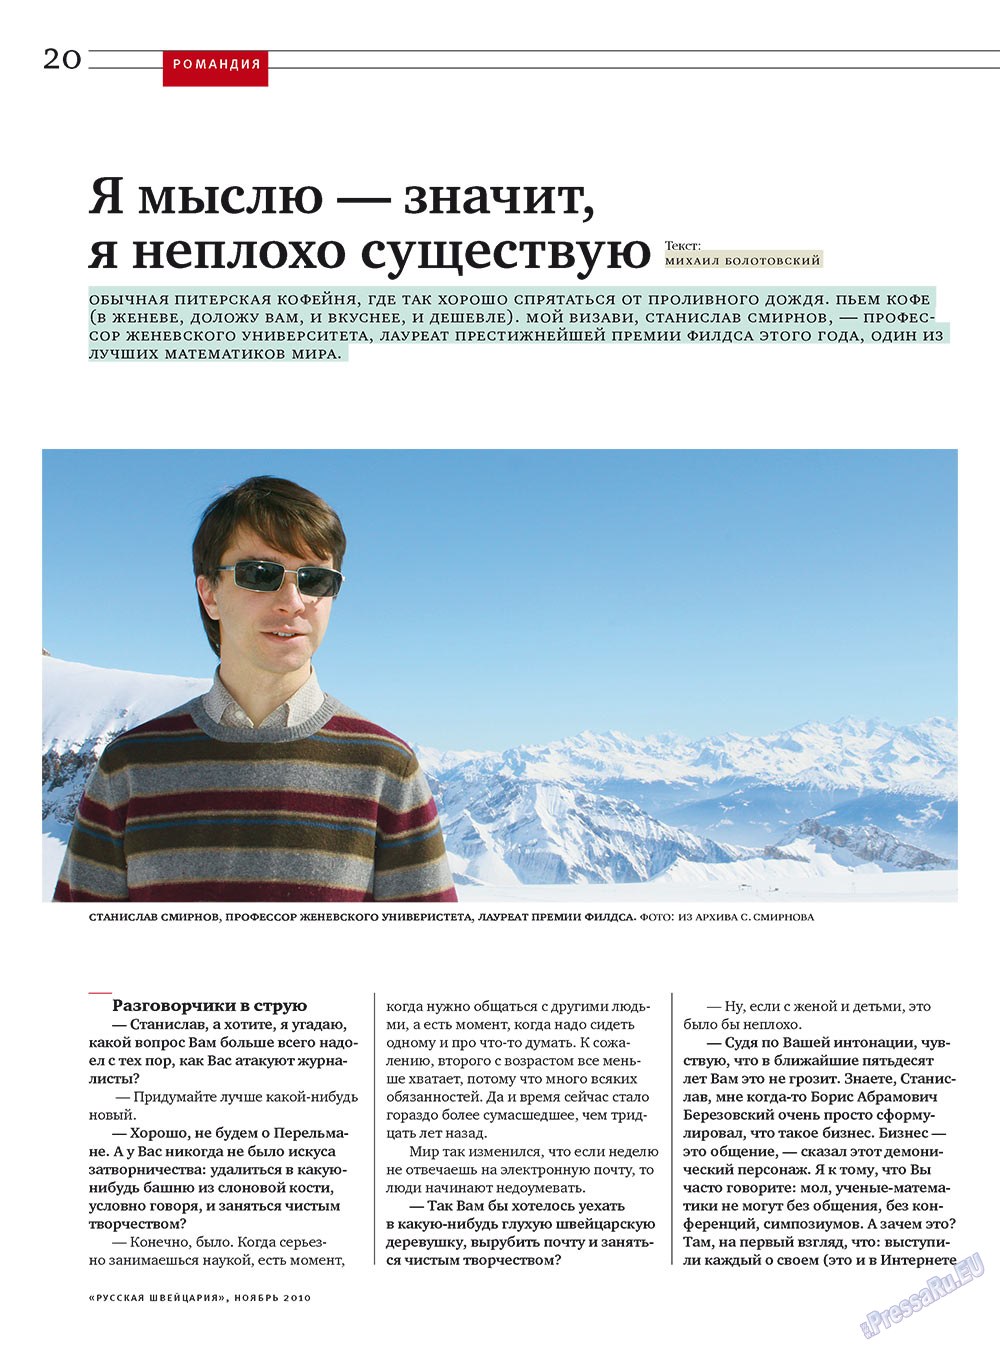 Русская Швейцария, журнал. 2010 №9 стр.20